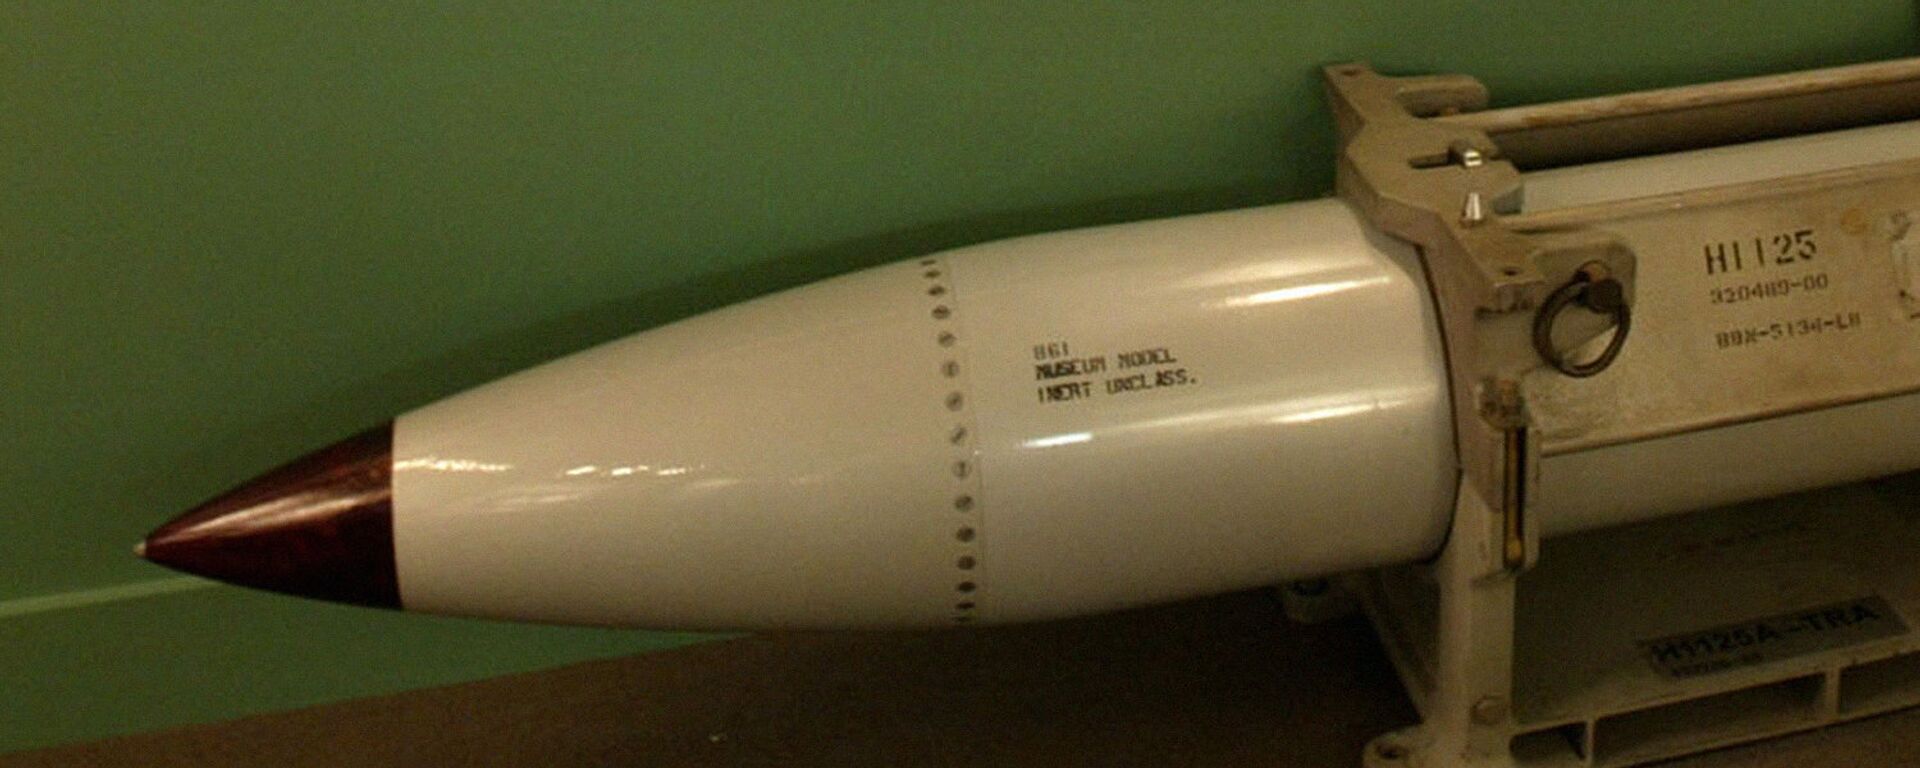 Авиабомба B61 на выставке в музее ядерного полигона. ЛАС-ВЕГАС, штат Невада, США - Sputnik Узбекистан, 1920, 18.08.2016